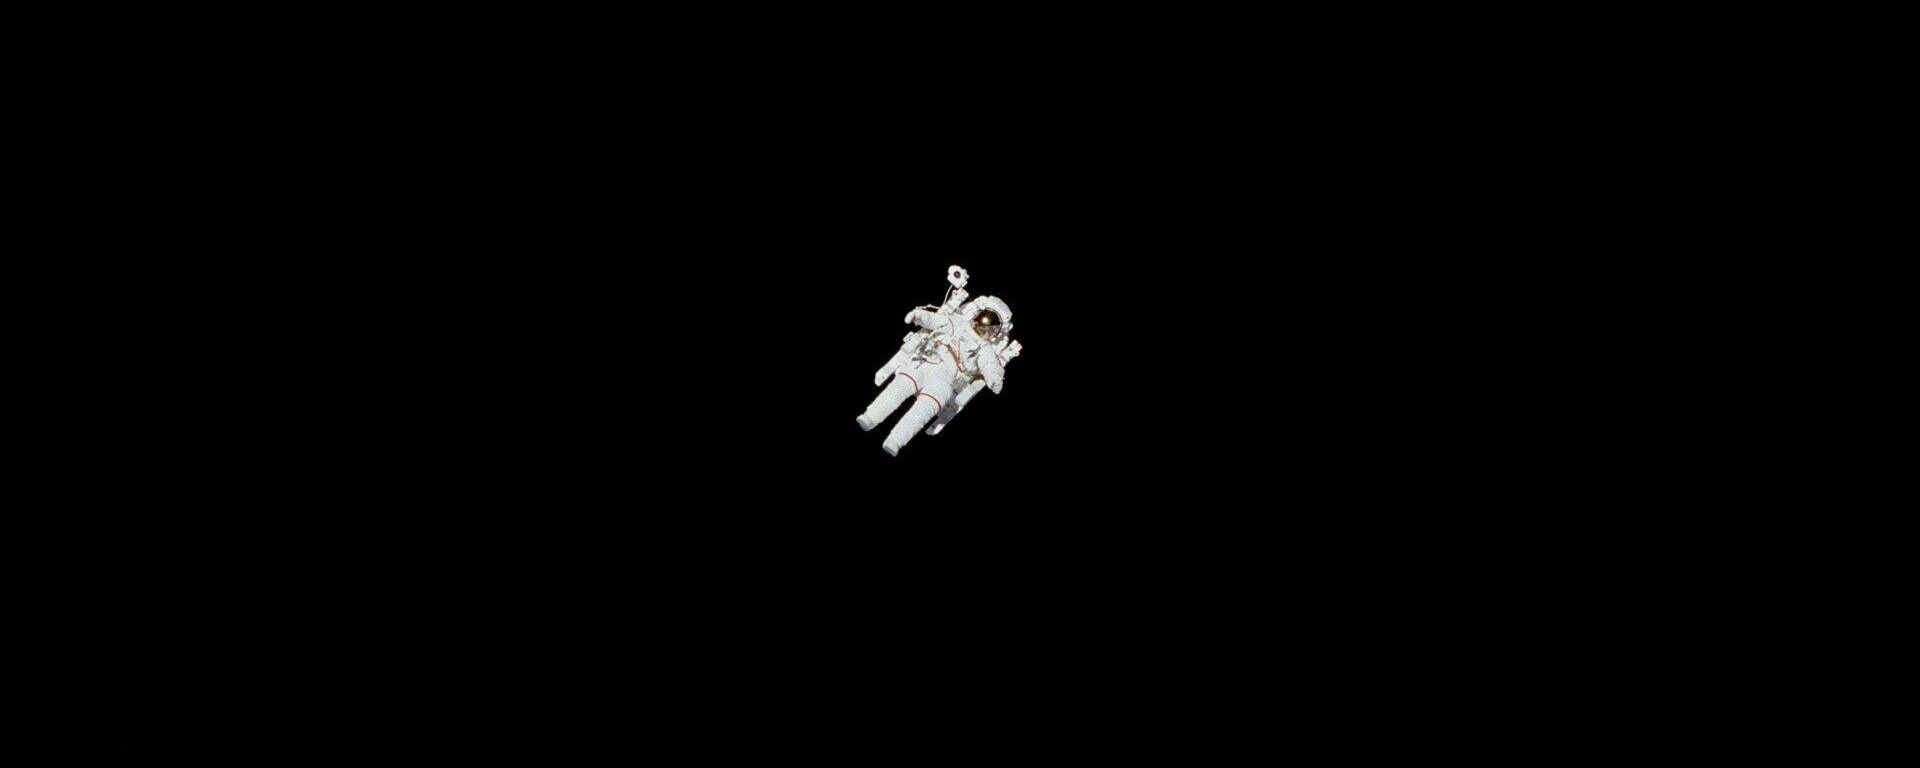 Un astronauta en el Espacio exterior - Sputnik Mundo, 1920, 14.12.2022